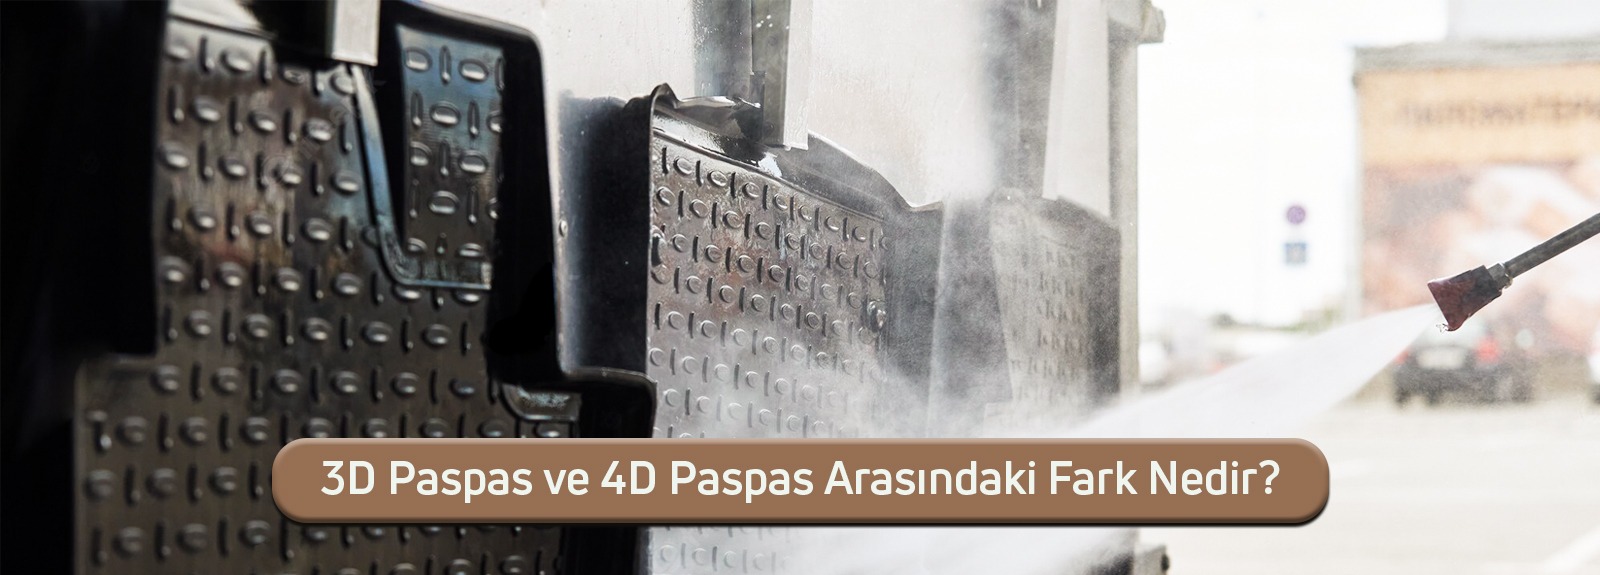 3D Paspas ve 4D Paspas Arasındaki Fark Nedir?